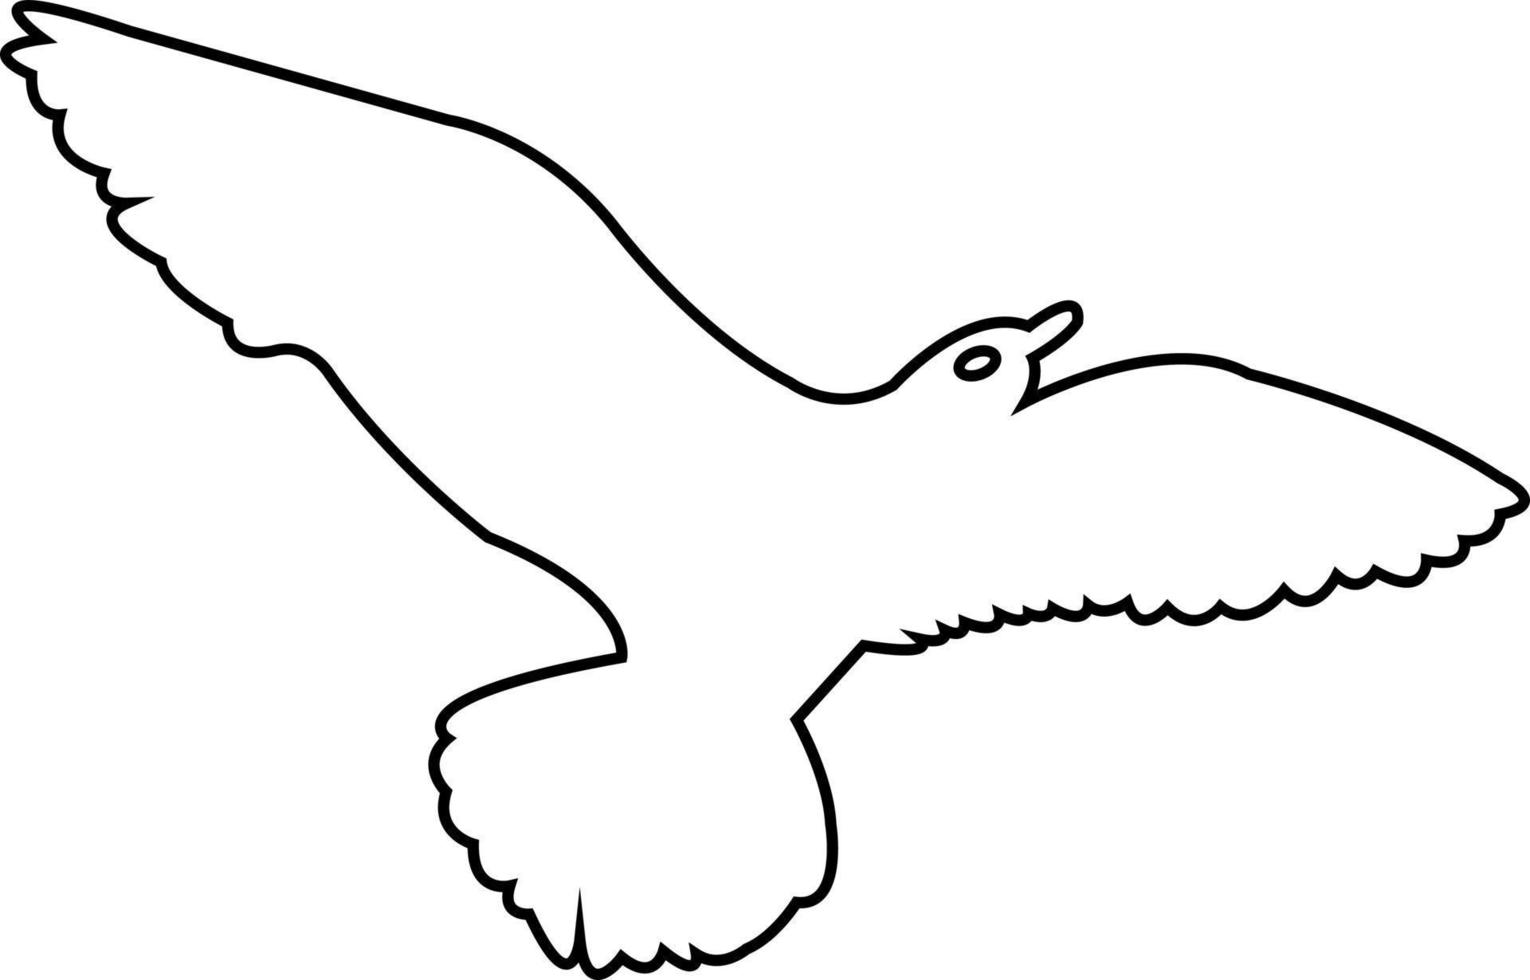 flygande fågel kontinuerlig linje ritning element som isolerad på vit bakgrund för logotyp eller dekorativt element. vektor illustration av djur form i trendig dispositionsstil.